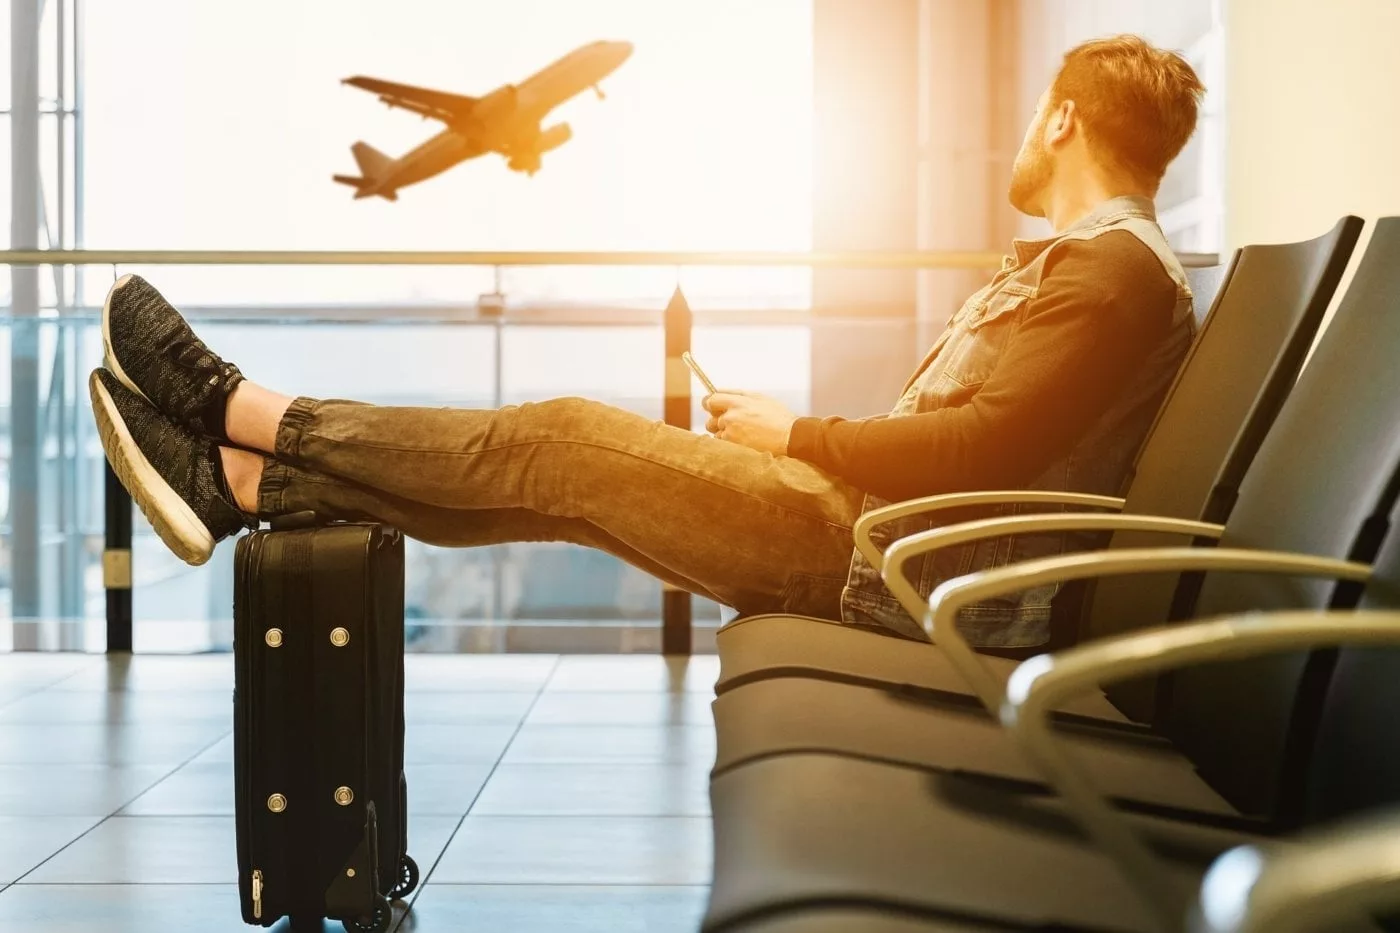 Un voyageur attend son vol dans un aeroport